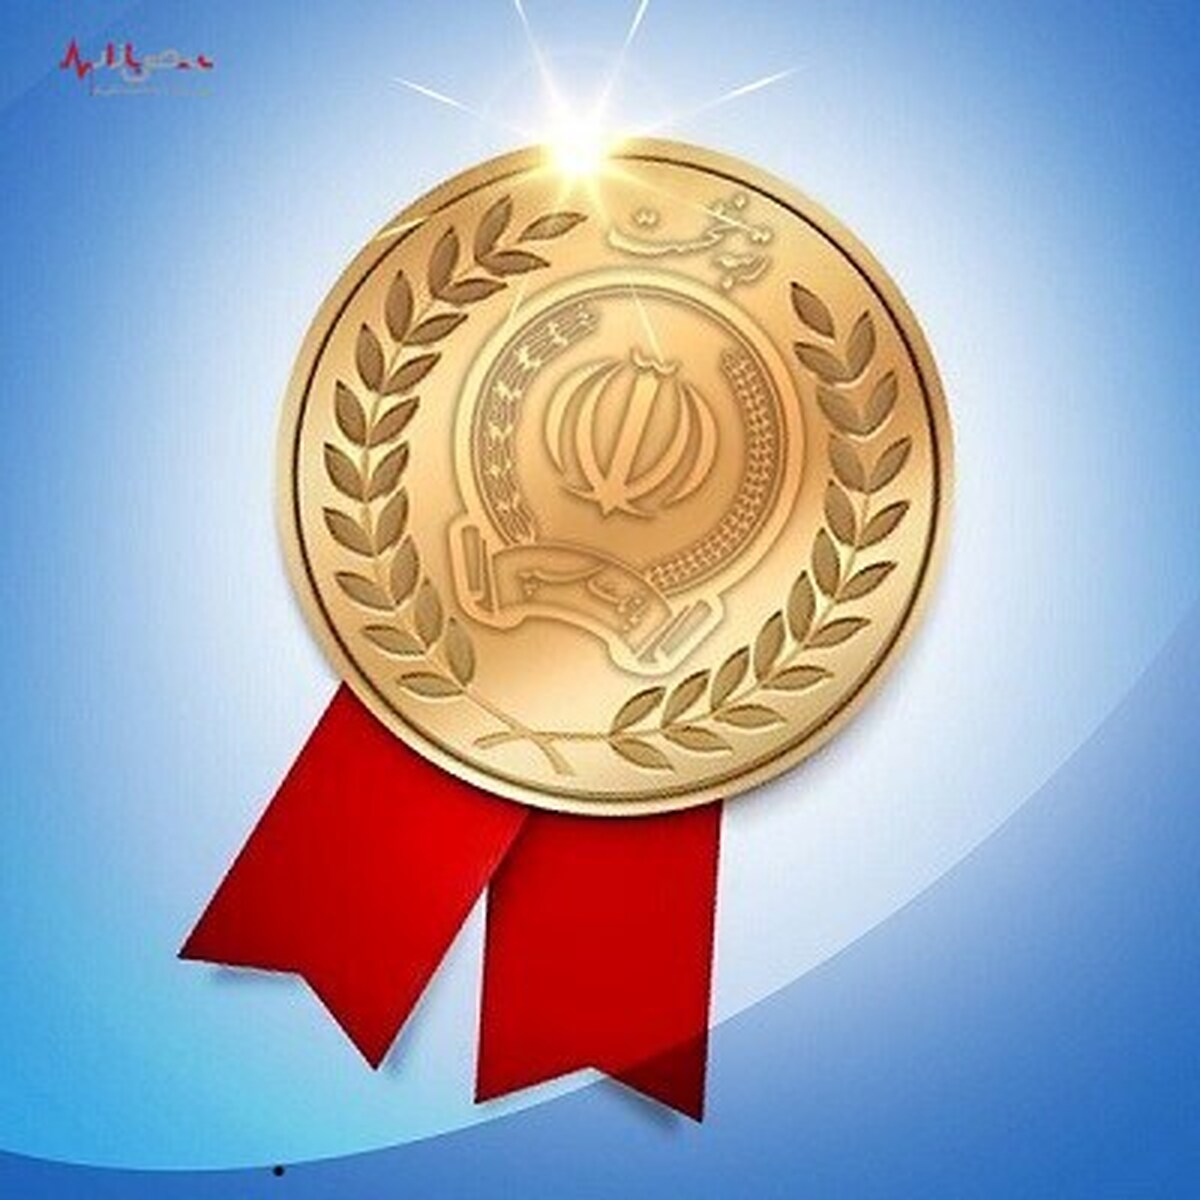 بانک سپه رتبه نخست پاسخگویی در نظام بانکی کشور را کسب کرد